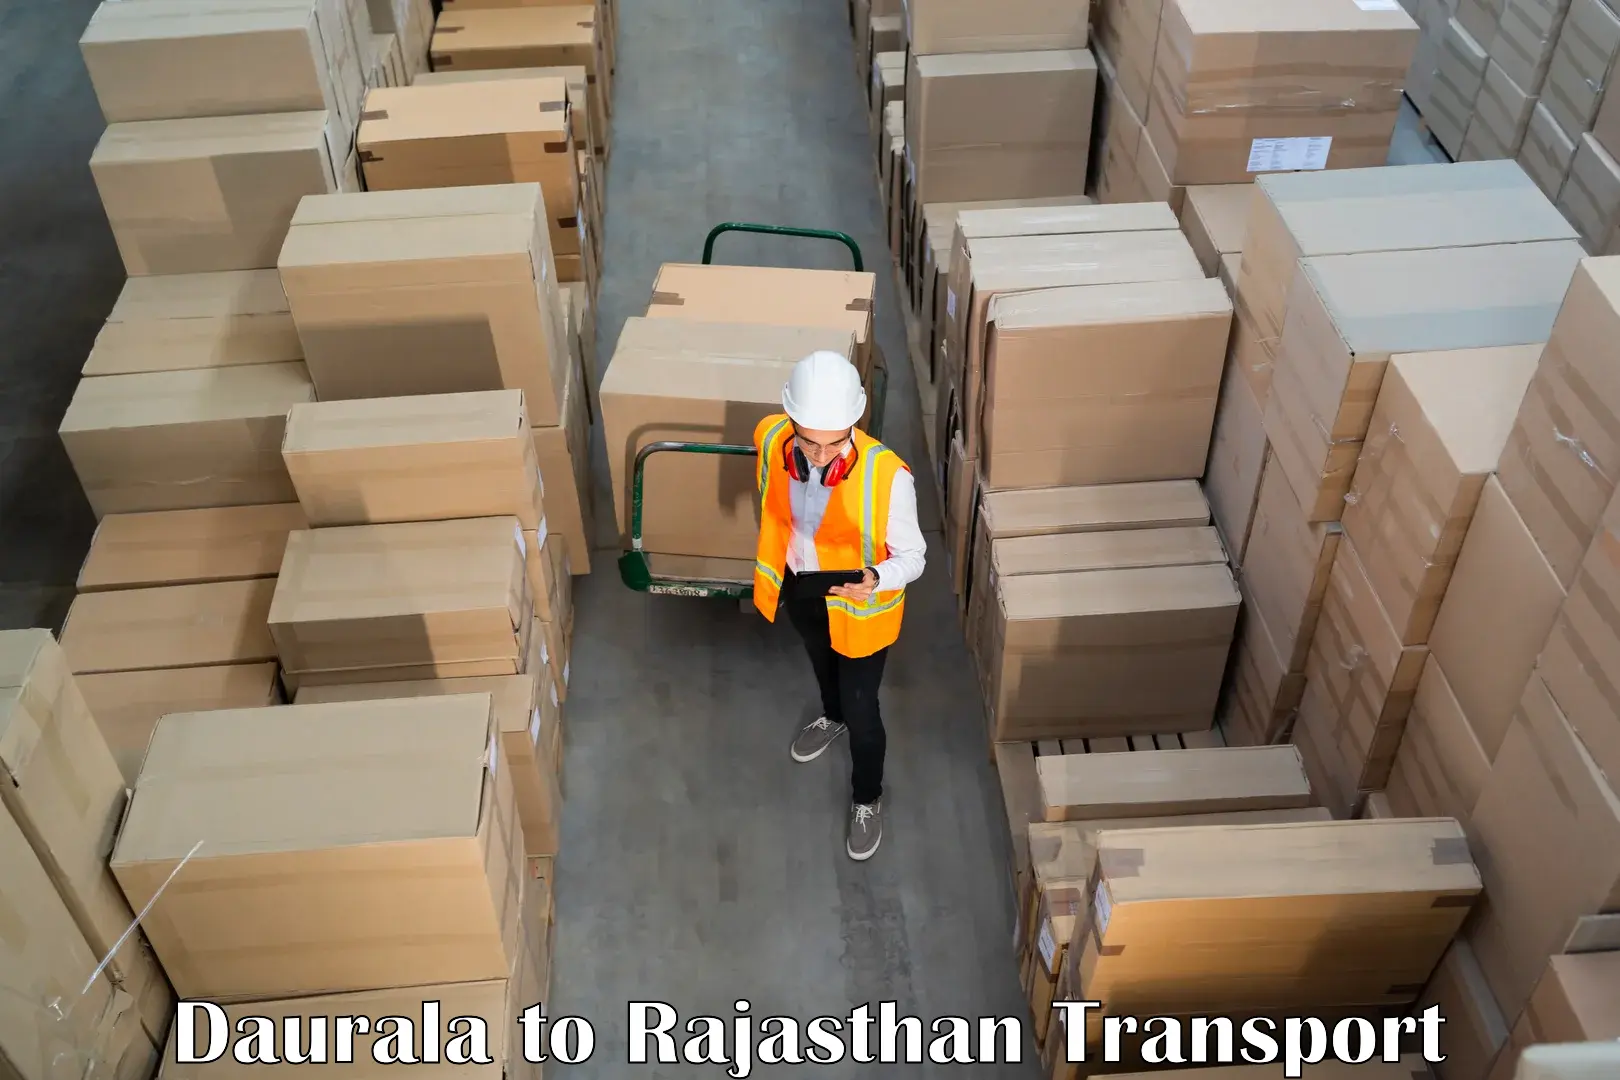 Lorry transport service Daurala to Nasirabad